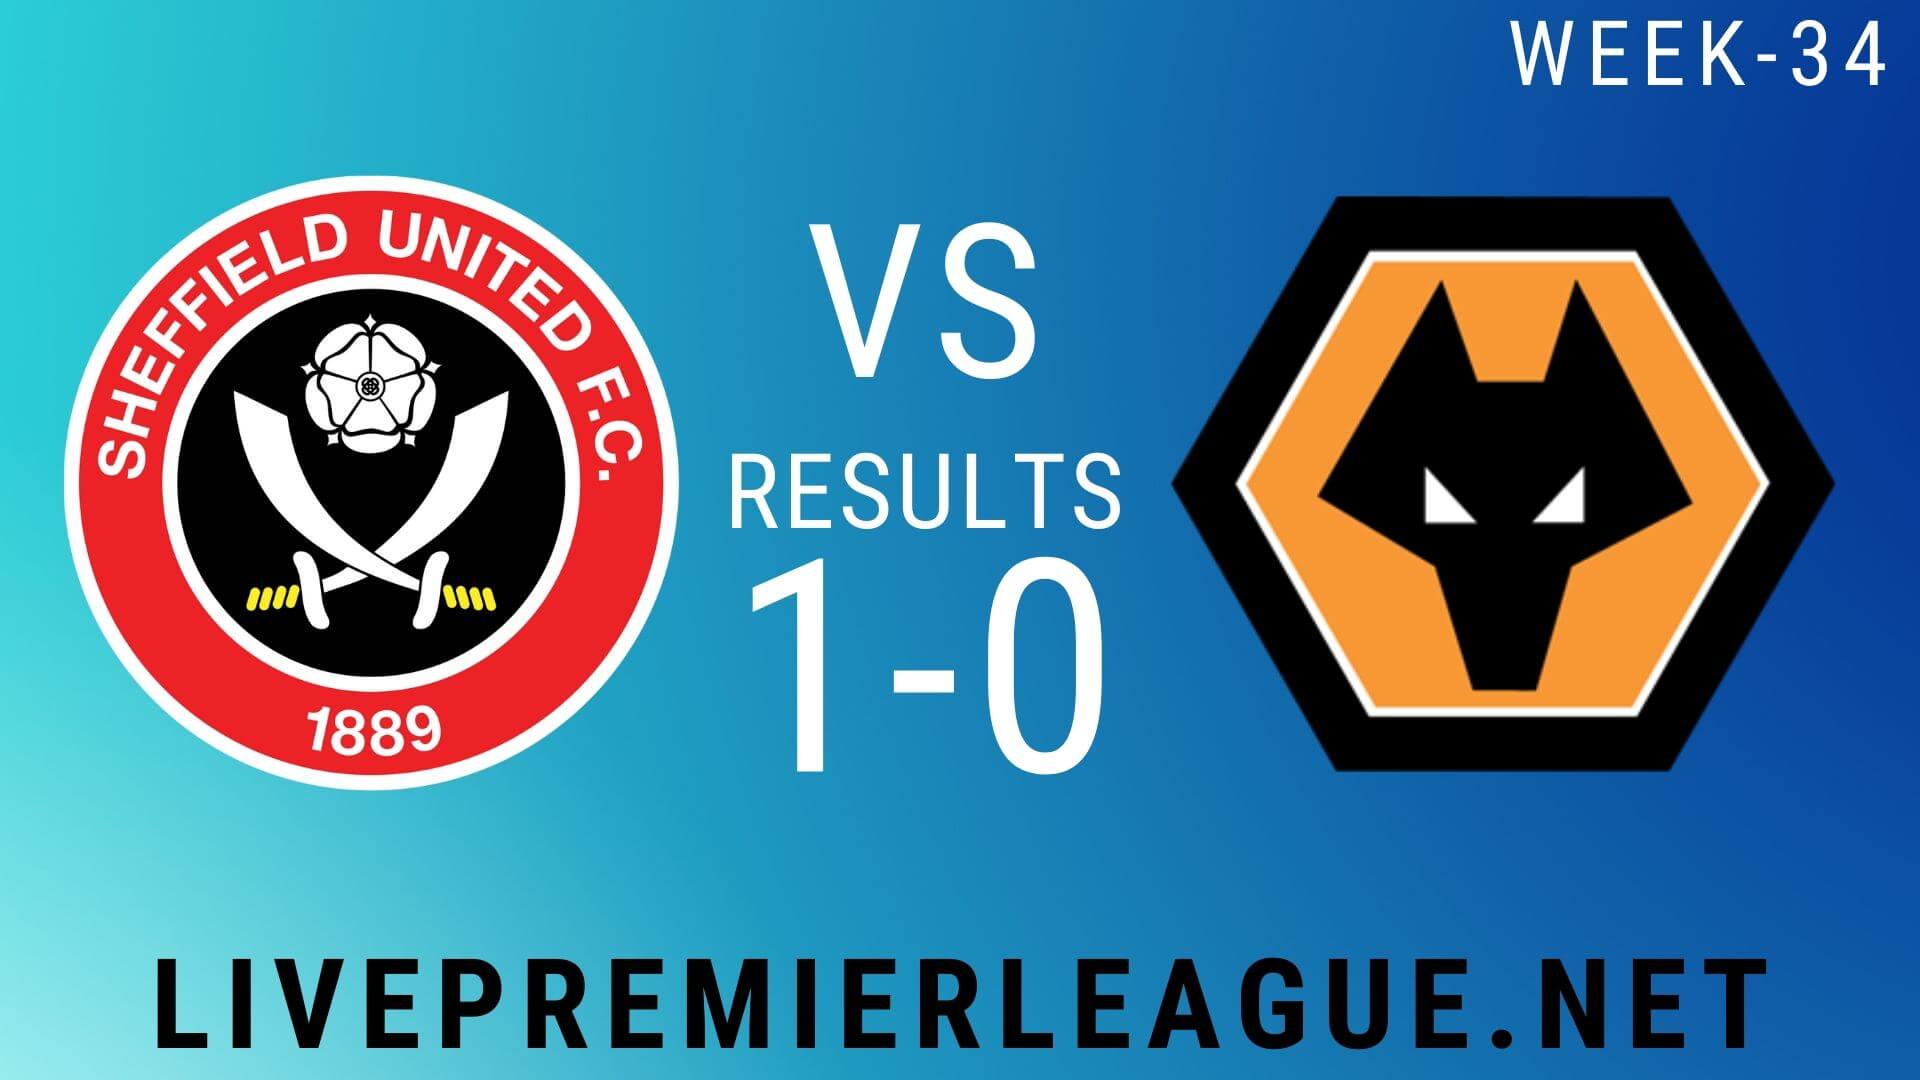 Sheffield United Vs Wolverhampton Wanderers | Week 34 Result 2020